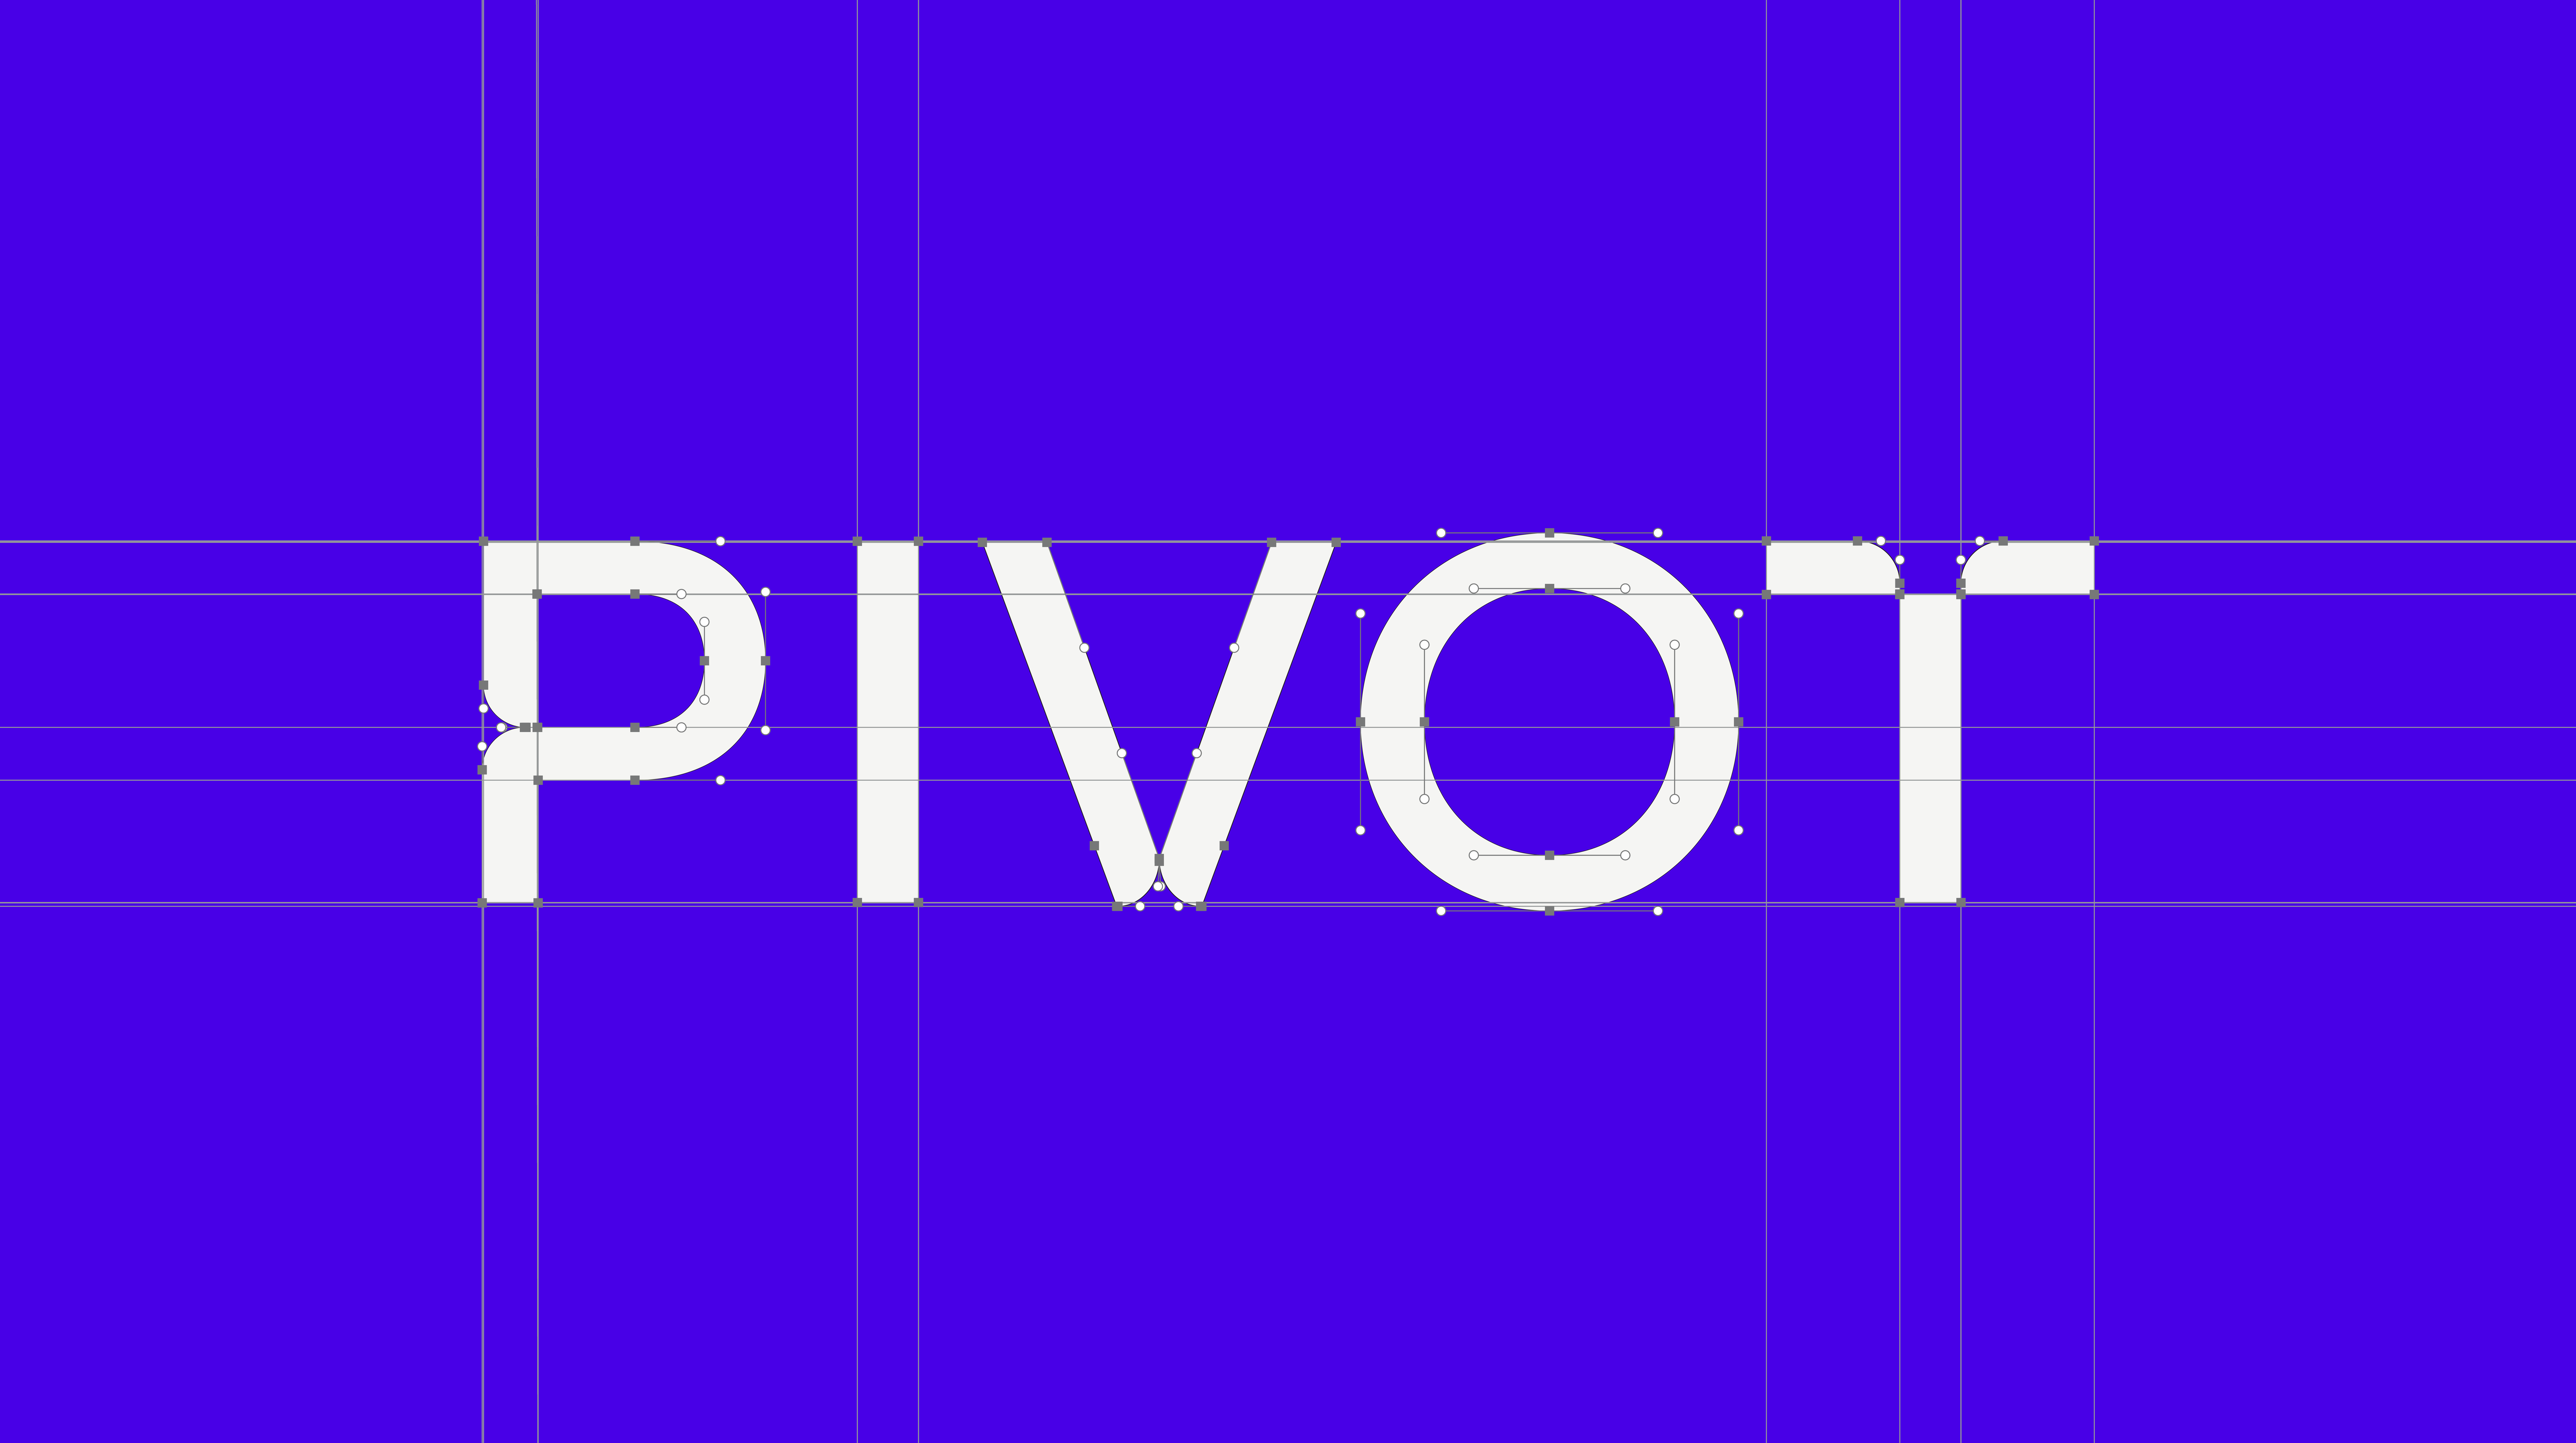 sbww_pivot_Logo_2820x1580